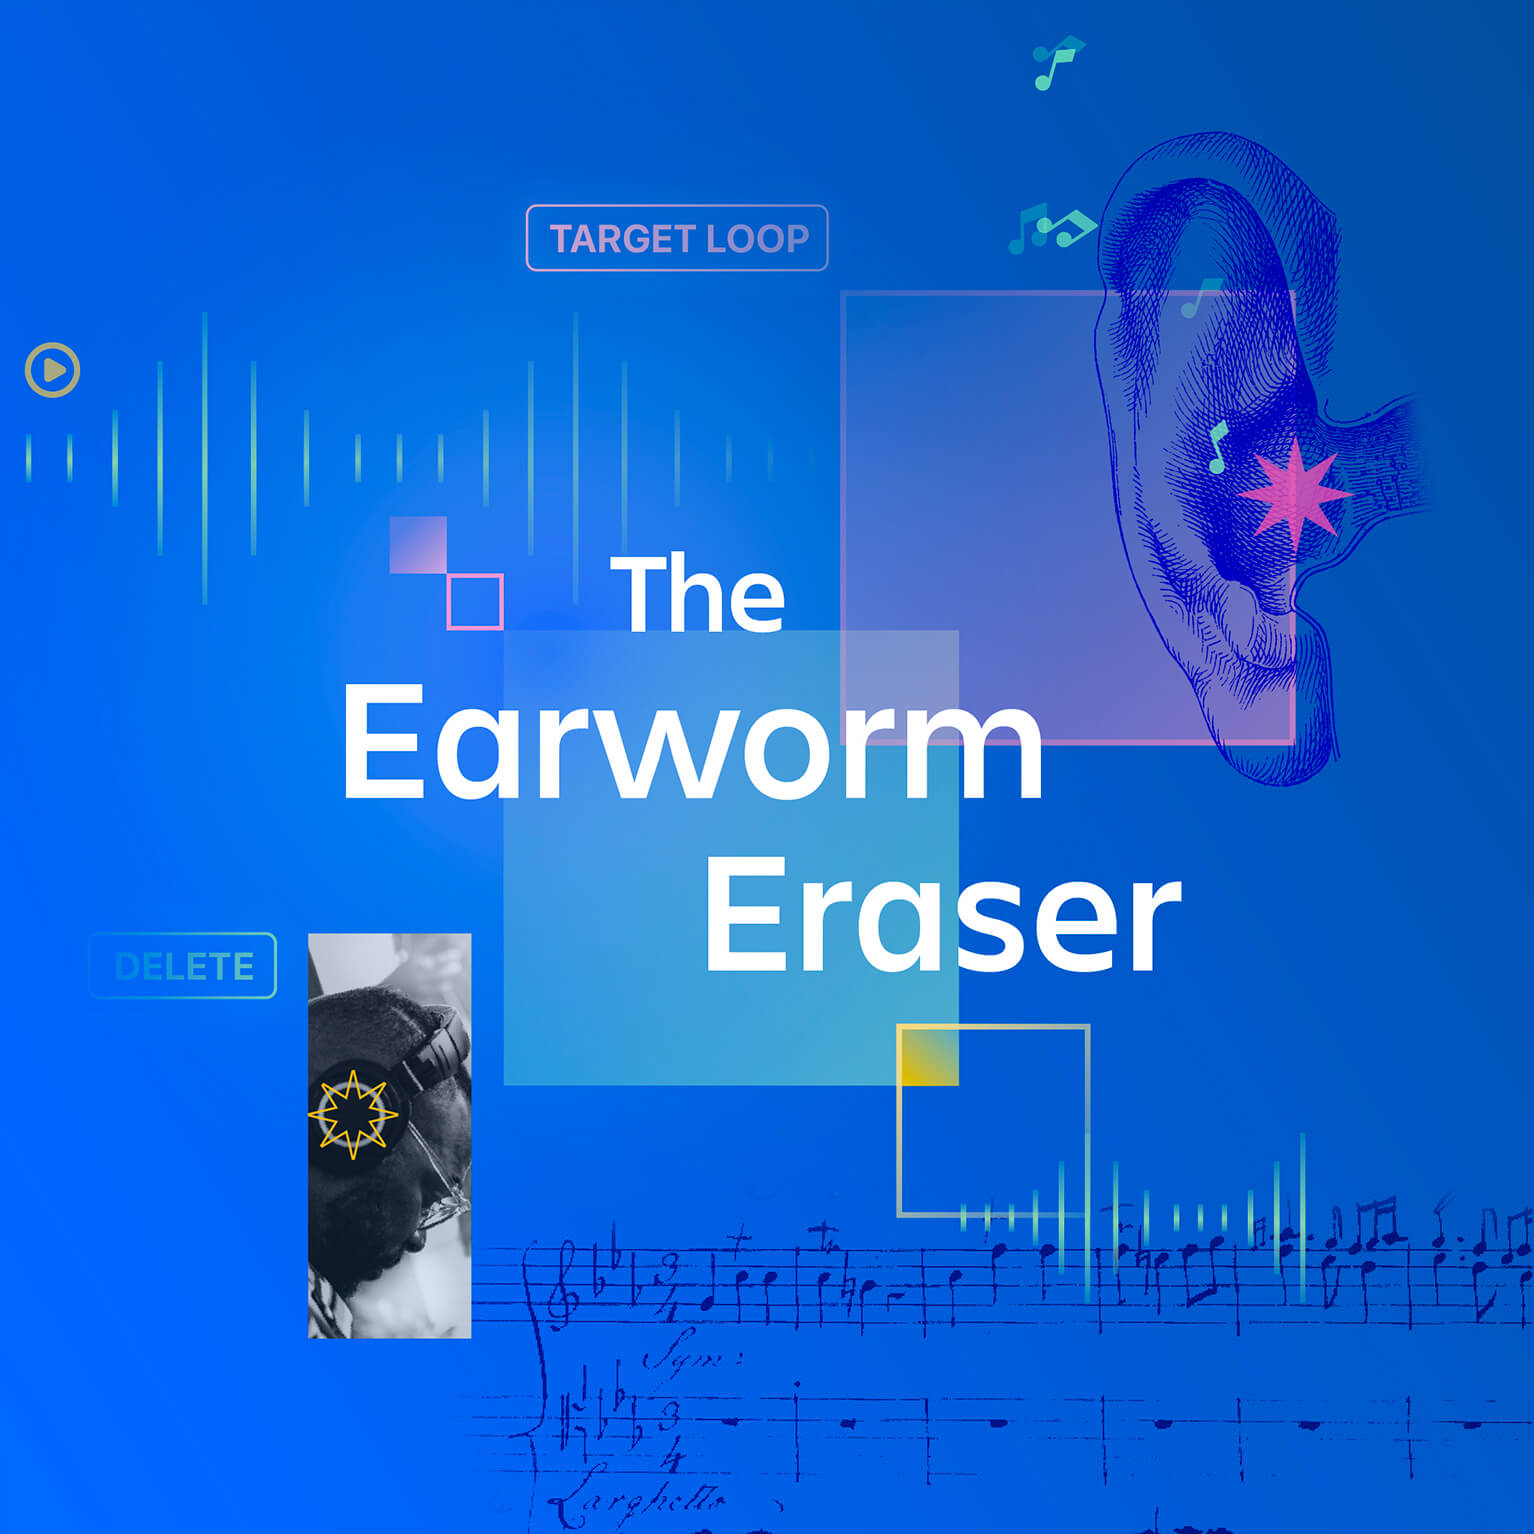 The Earworm Eraser illustration